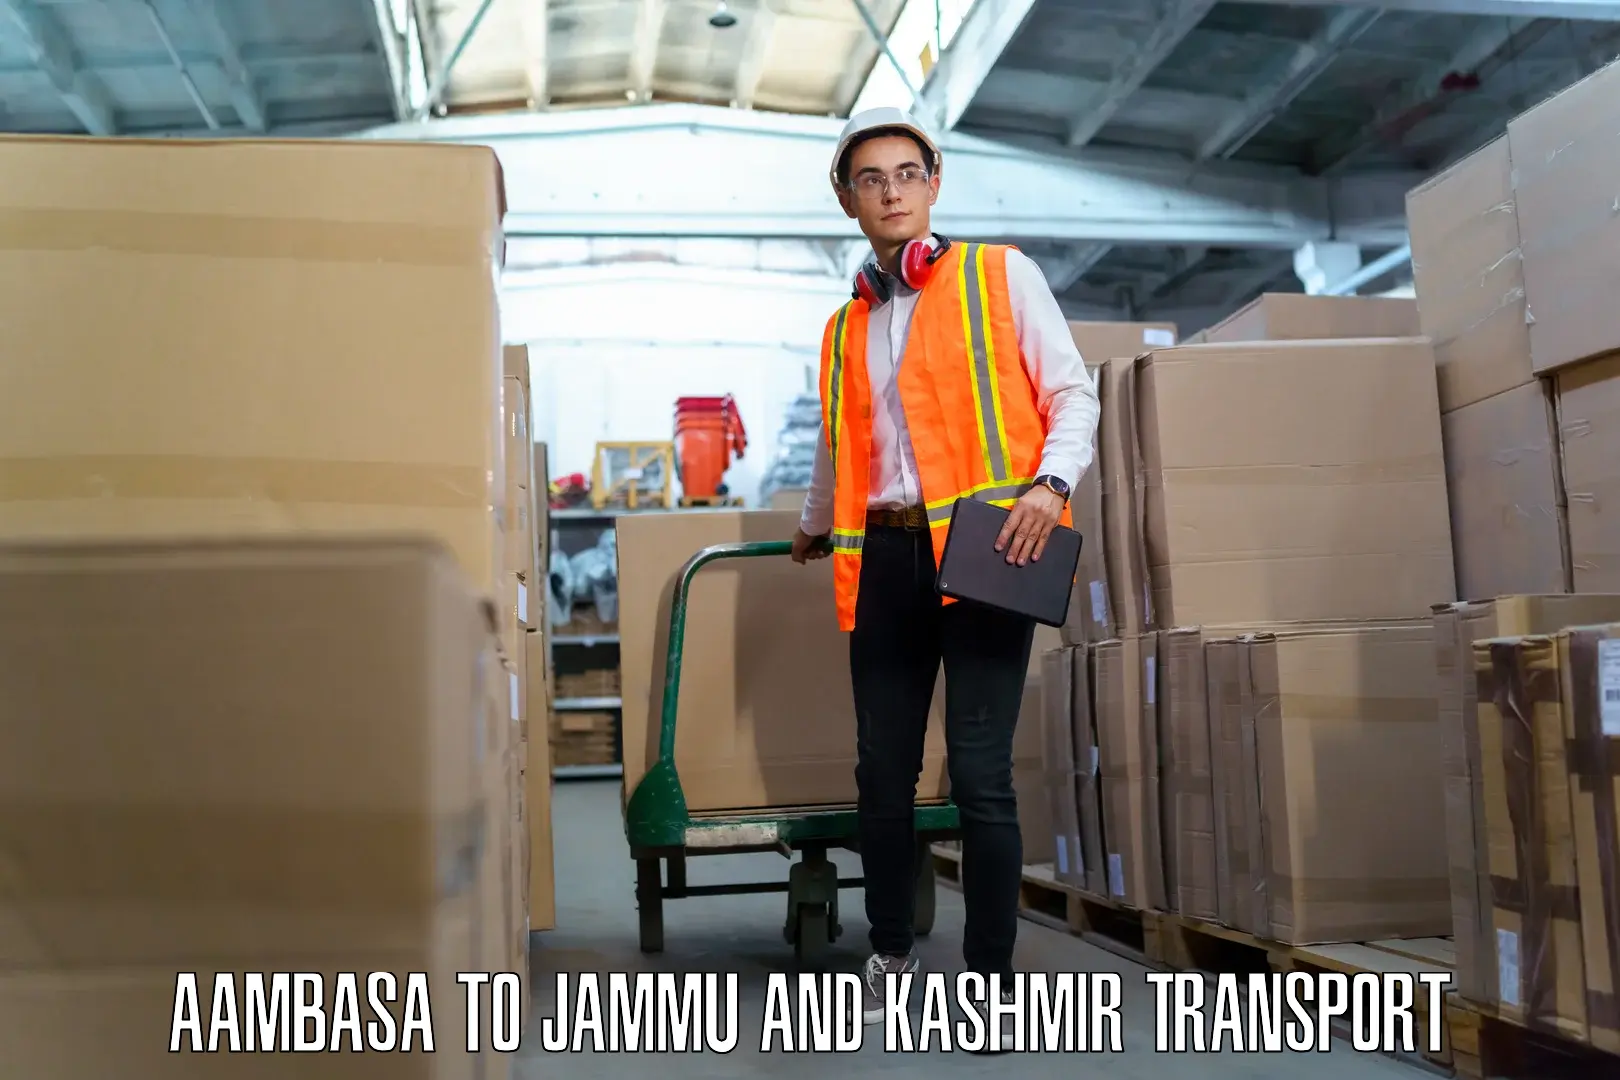 Express transport services Aambasa to Jammu